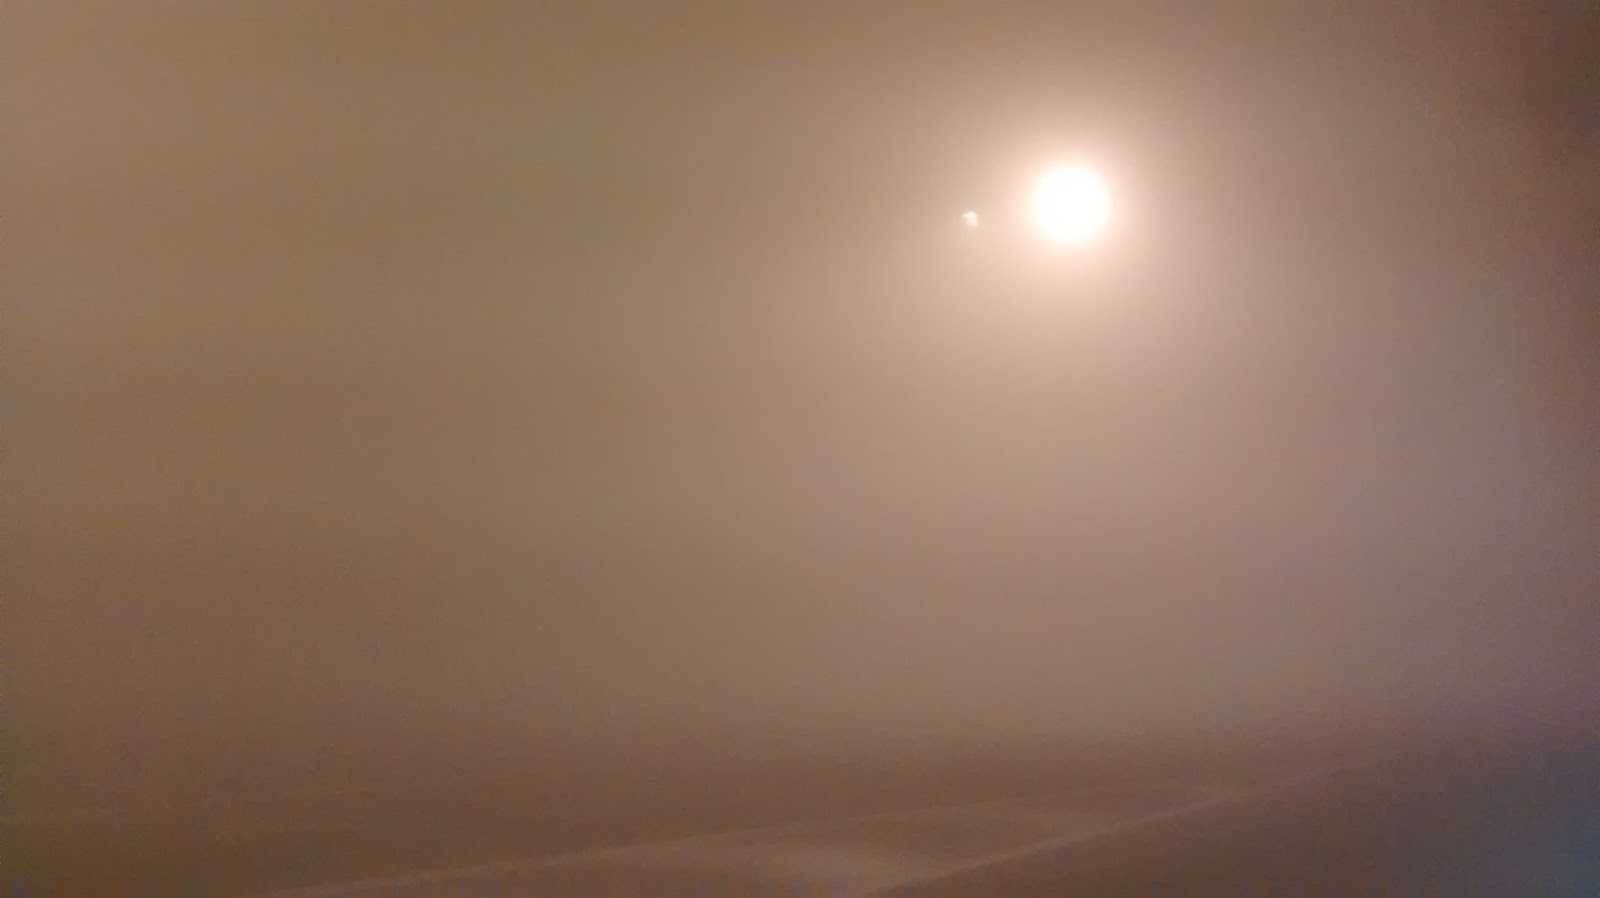 fog in delhi